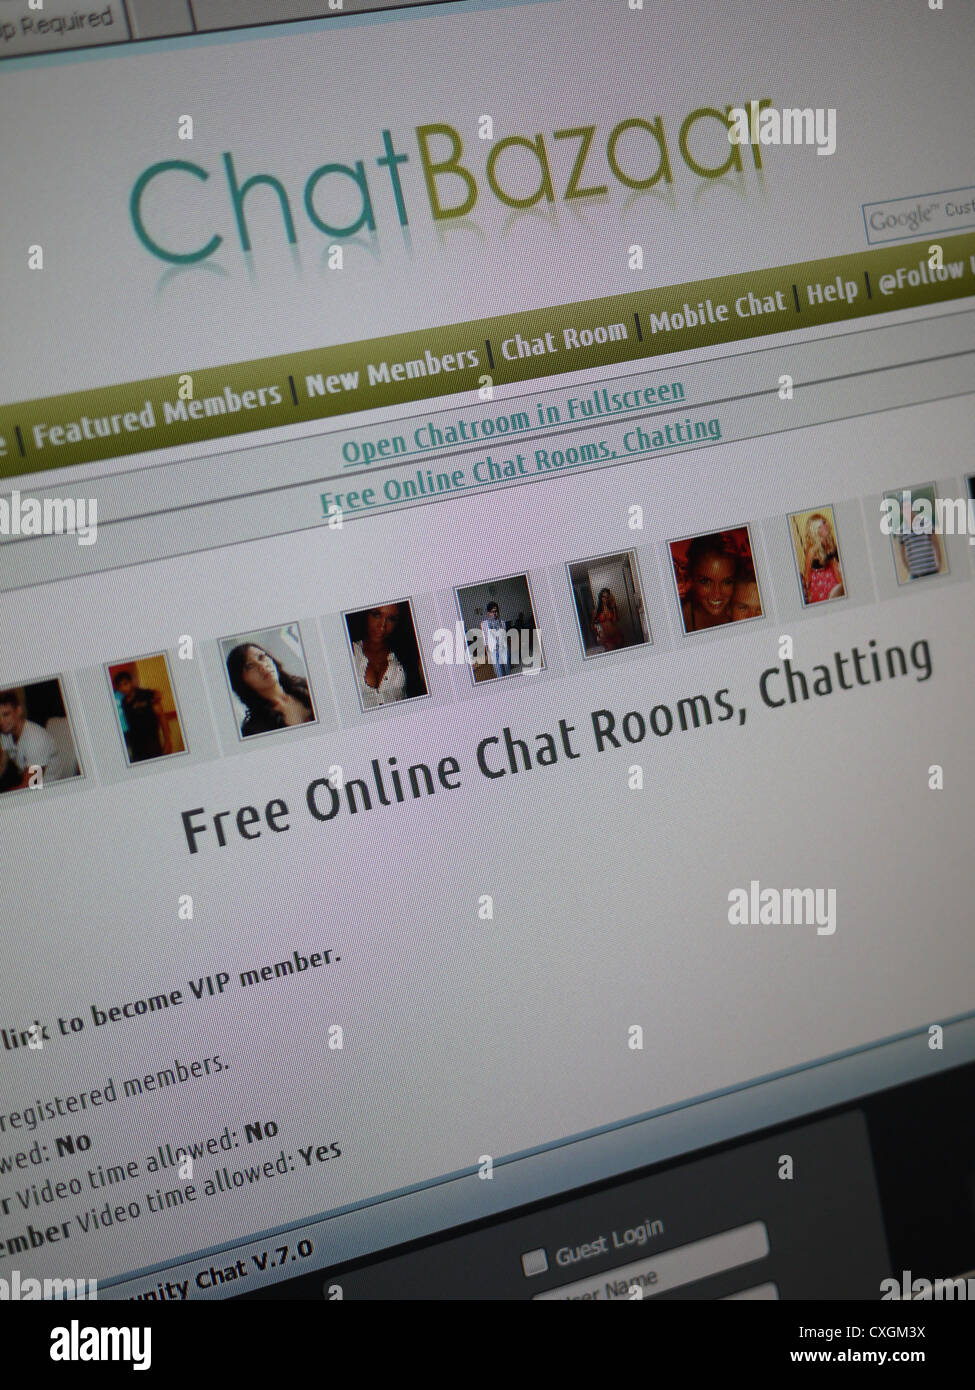 online chat room chatbazaar.com Stock Photo